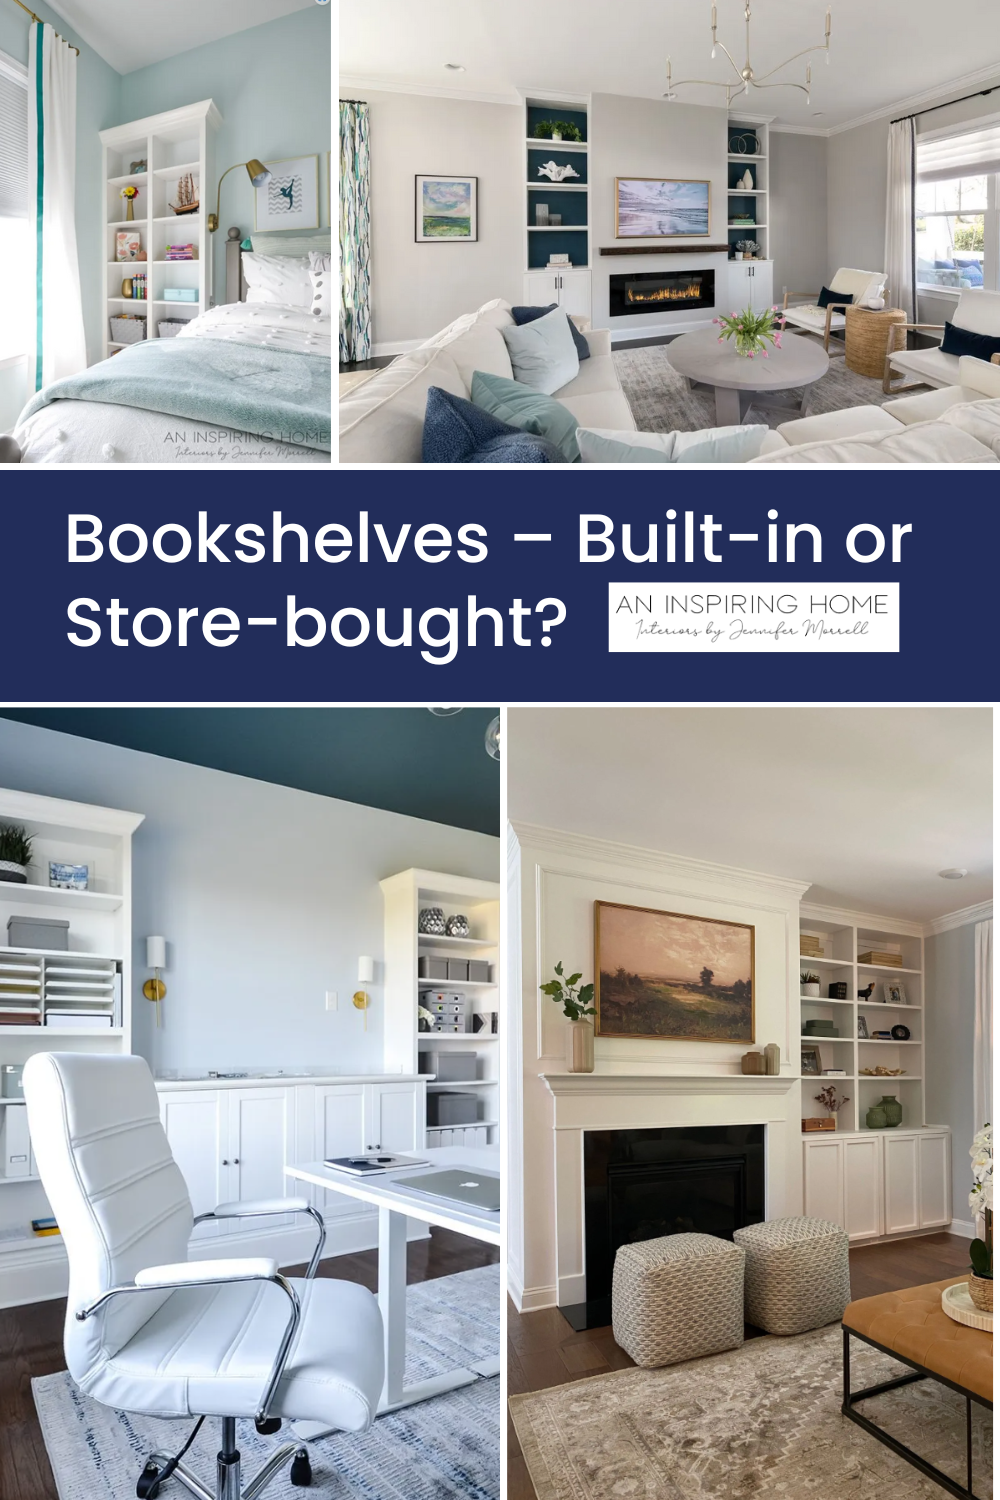 Bookshelves – Built-in or Store-bought?